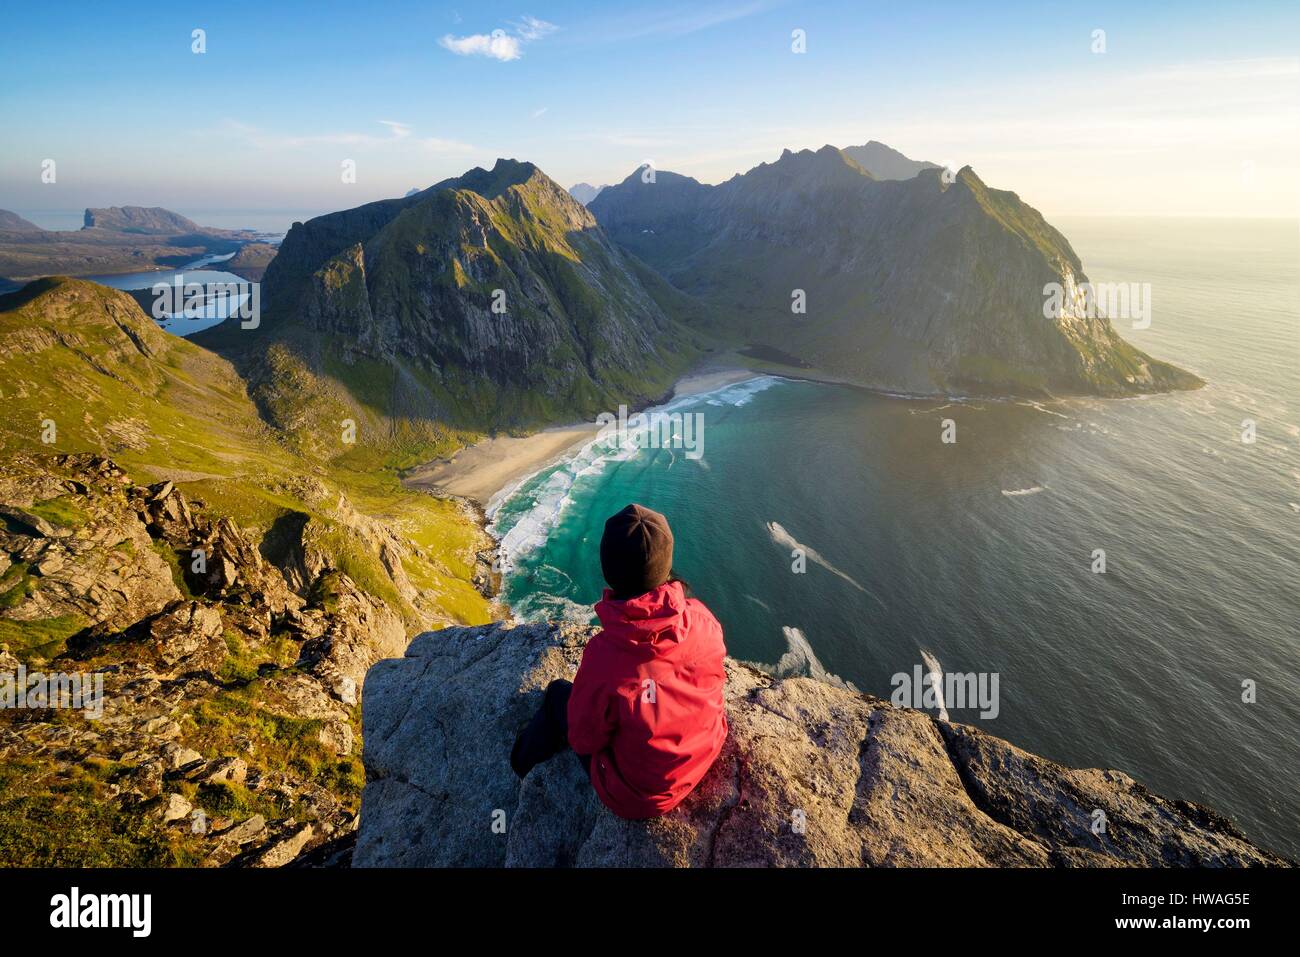 Norvegia, Nordland, isole Lofoten, isola Moskenesoy, donna escursionista presso la vetta del monte Ryten (543m), la spiaggia isolata di Kvalvika al di sotto di Foto Stock